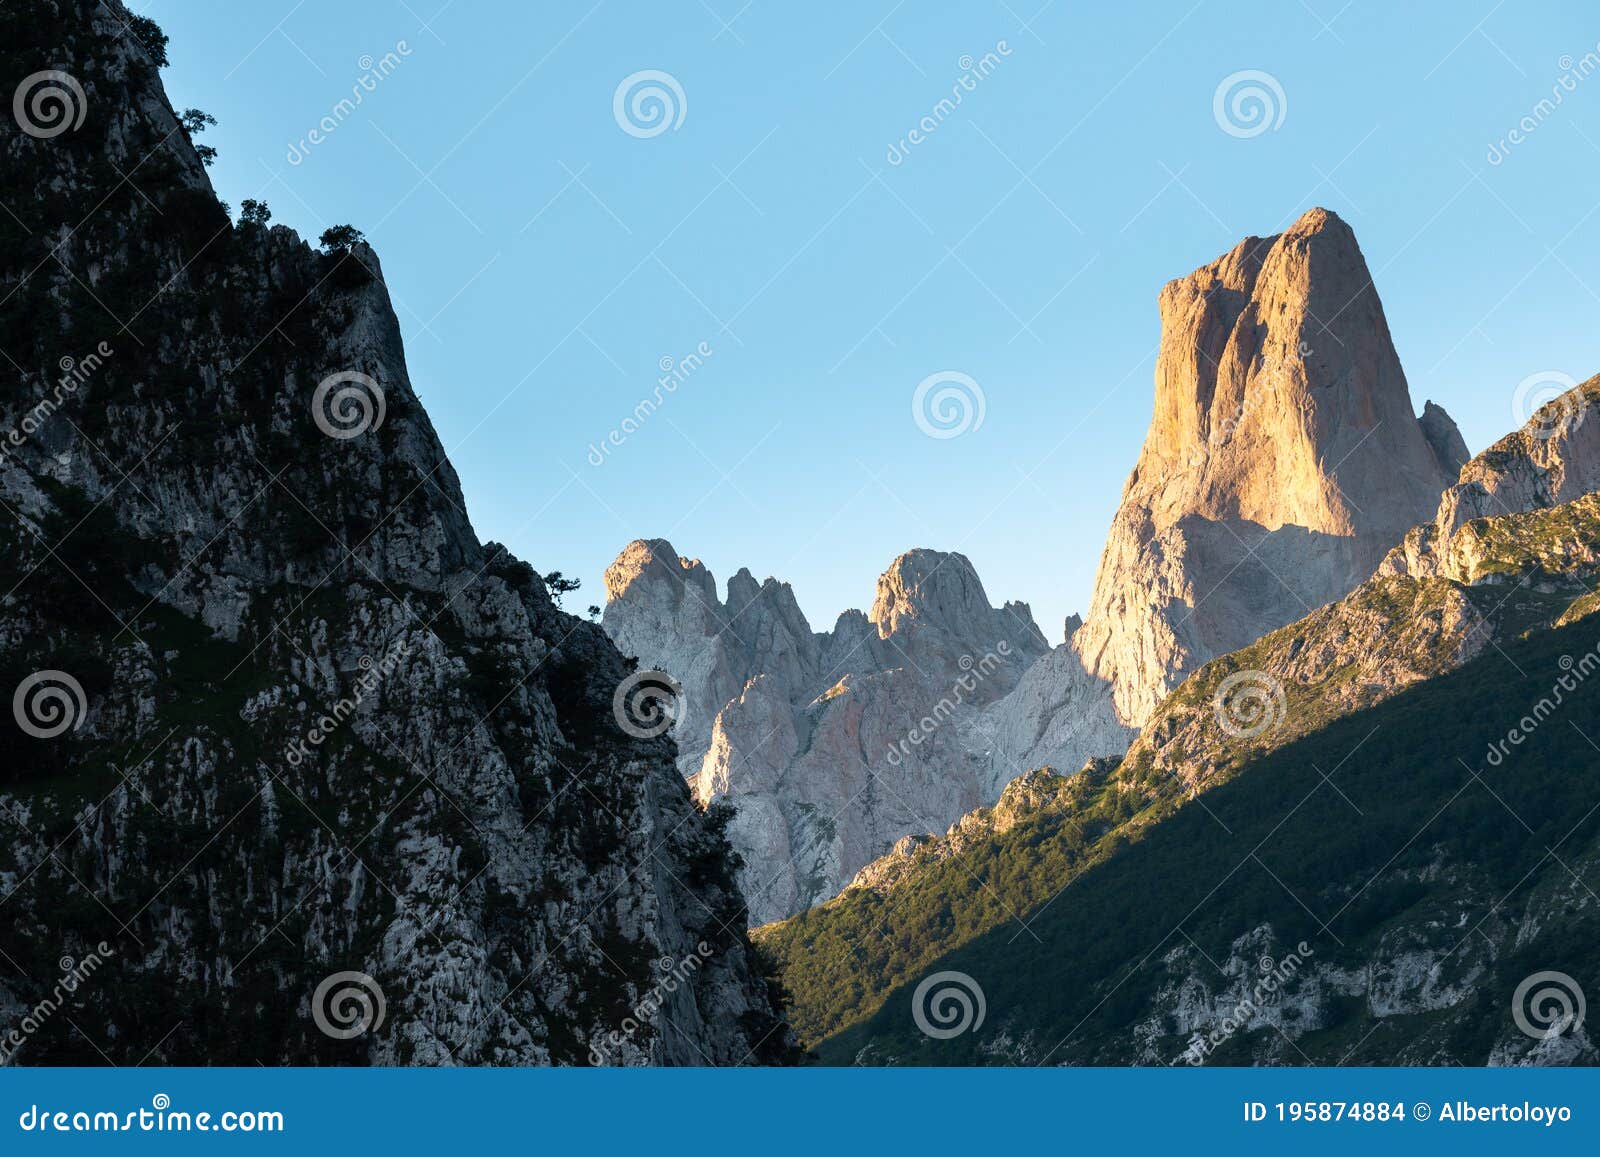 naranjo de bulnes, picu urriellu, from camarmena village at sunrise in picos de europa national park, asturias in spain